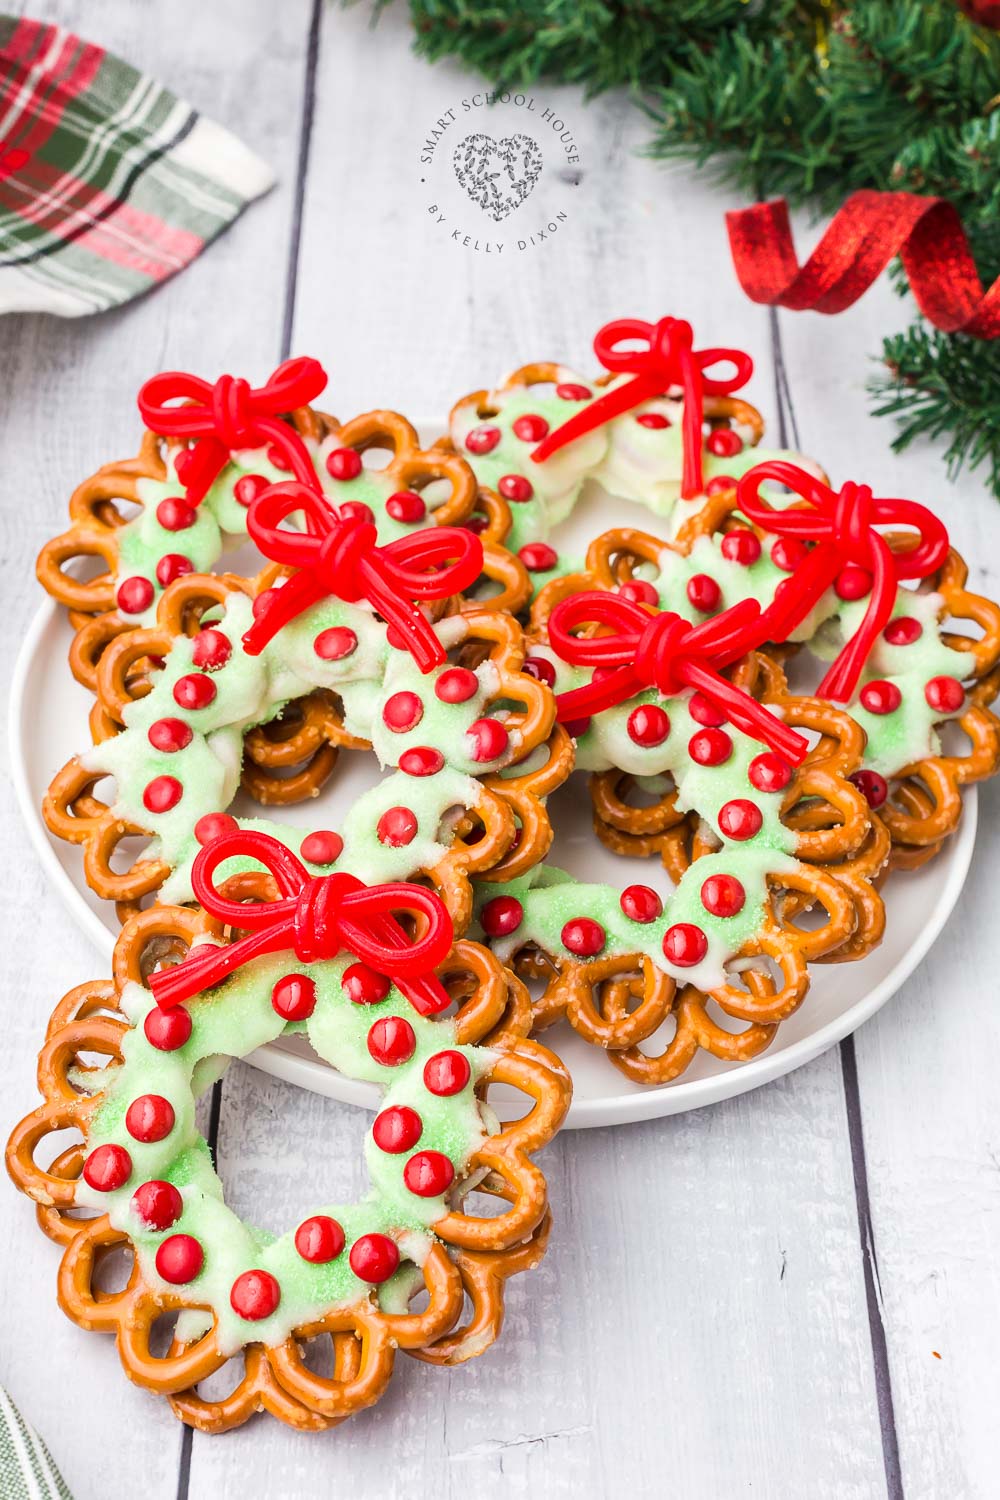 ¡Las coronas de pretzel con un lazo de regaliz rojo son una gran y festiva idea navideña!  Regalo favorito de vacaciones.